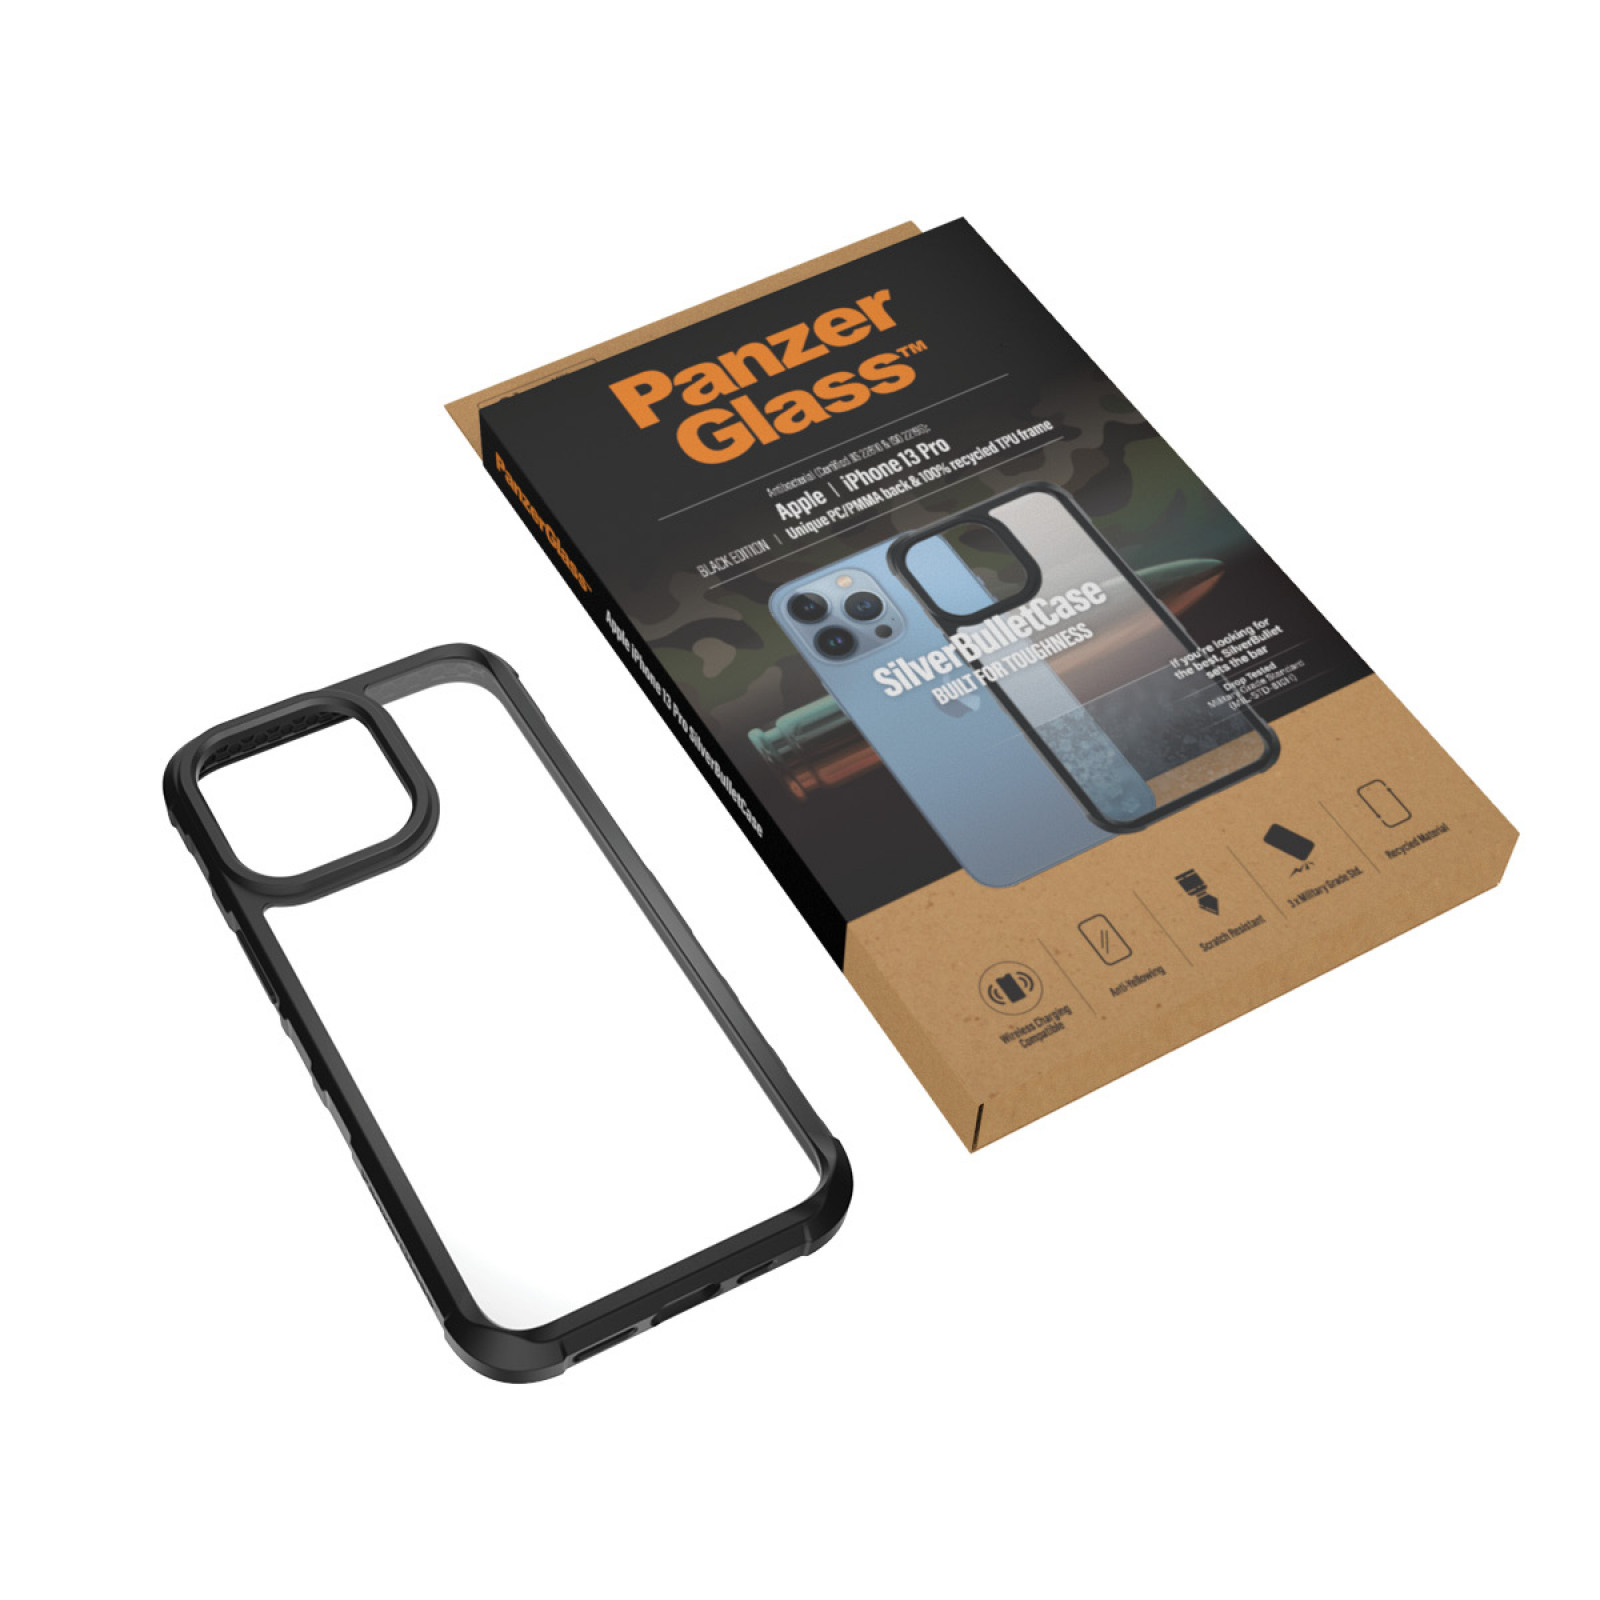 Гръб PanzerGlass SilverBulletCase за Iphone 13 Pro  - Черна рамка